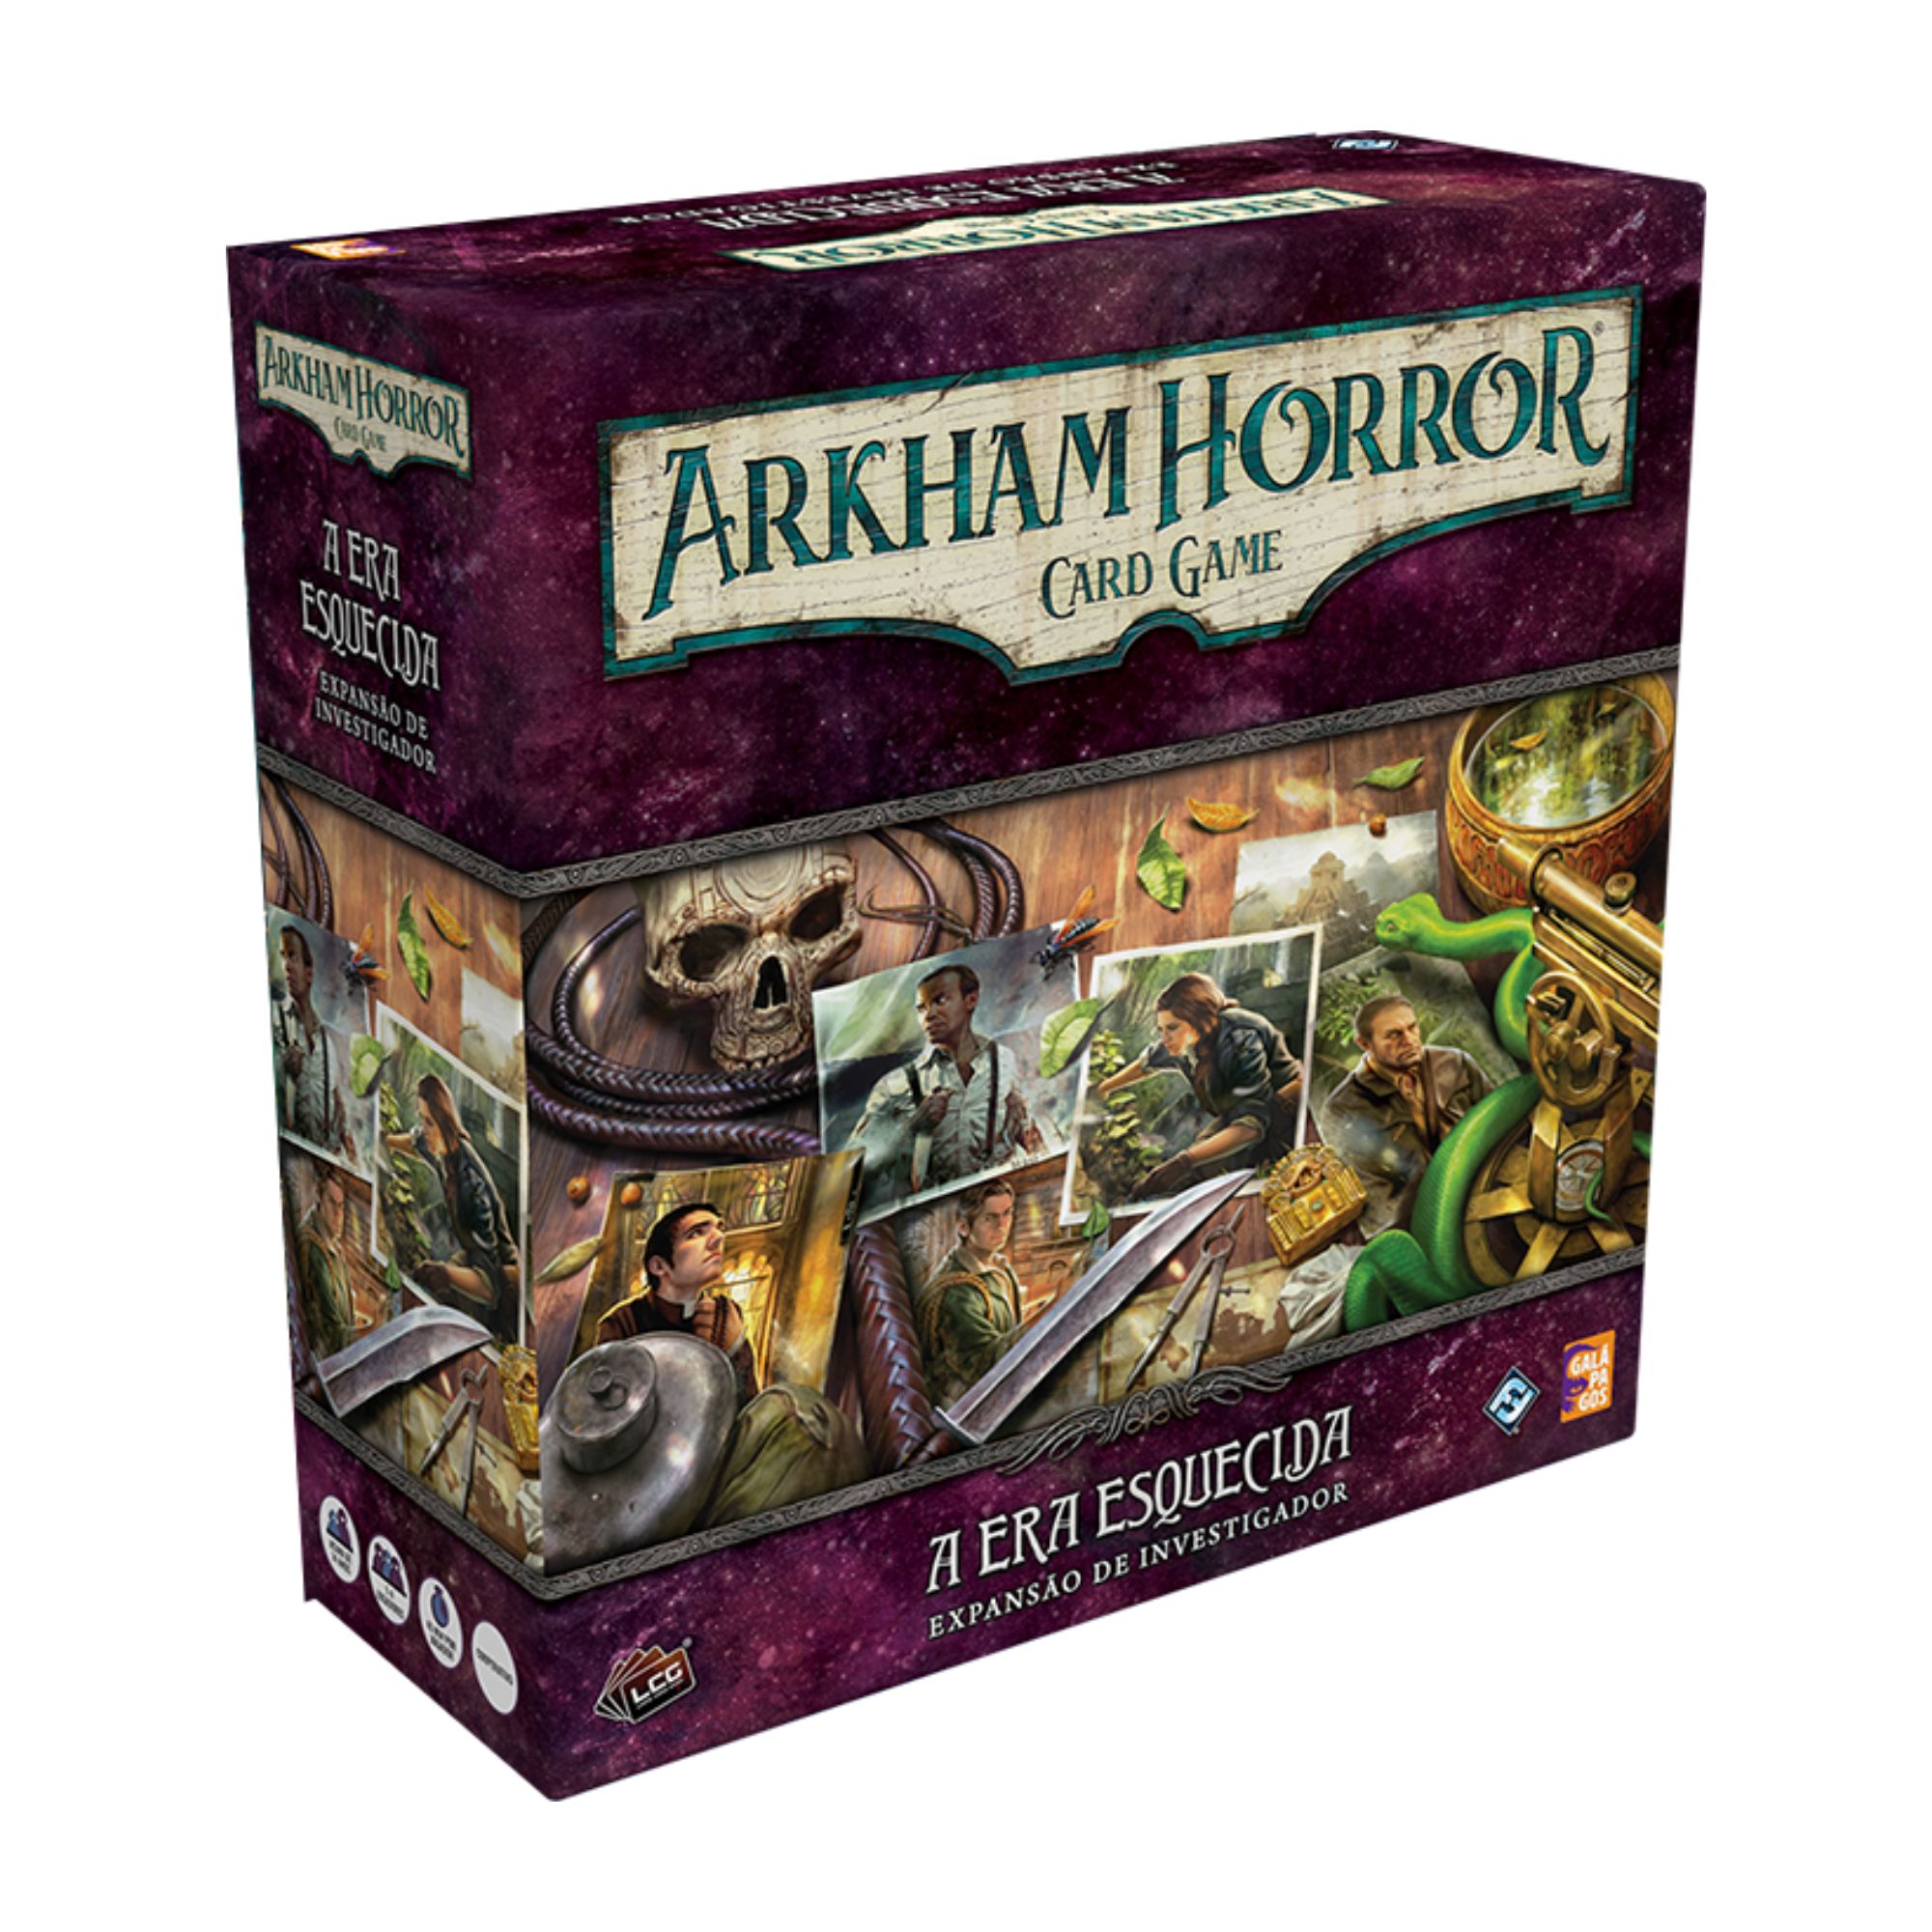 Expansão de Investigador Arkham Horror: Card Game - A Era Esquecida